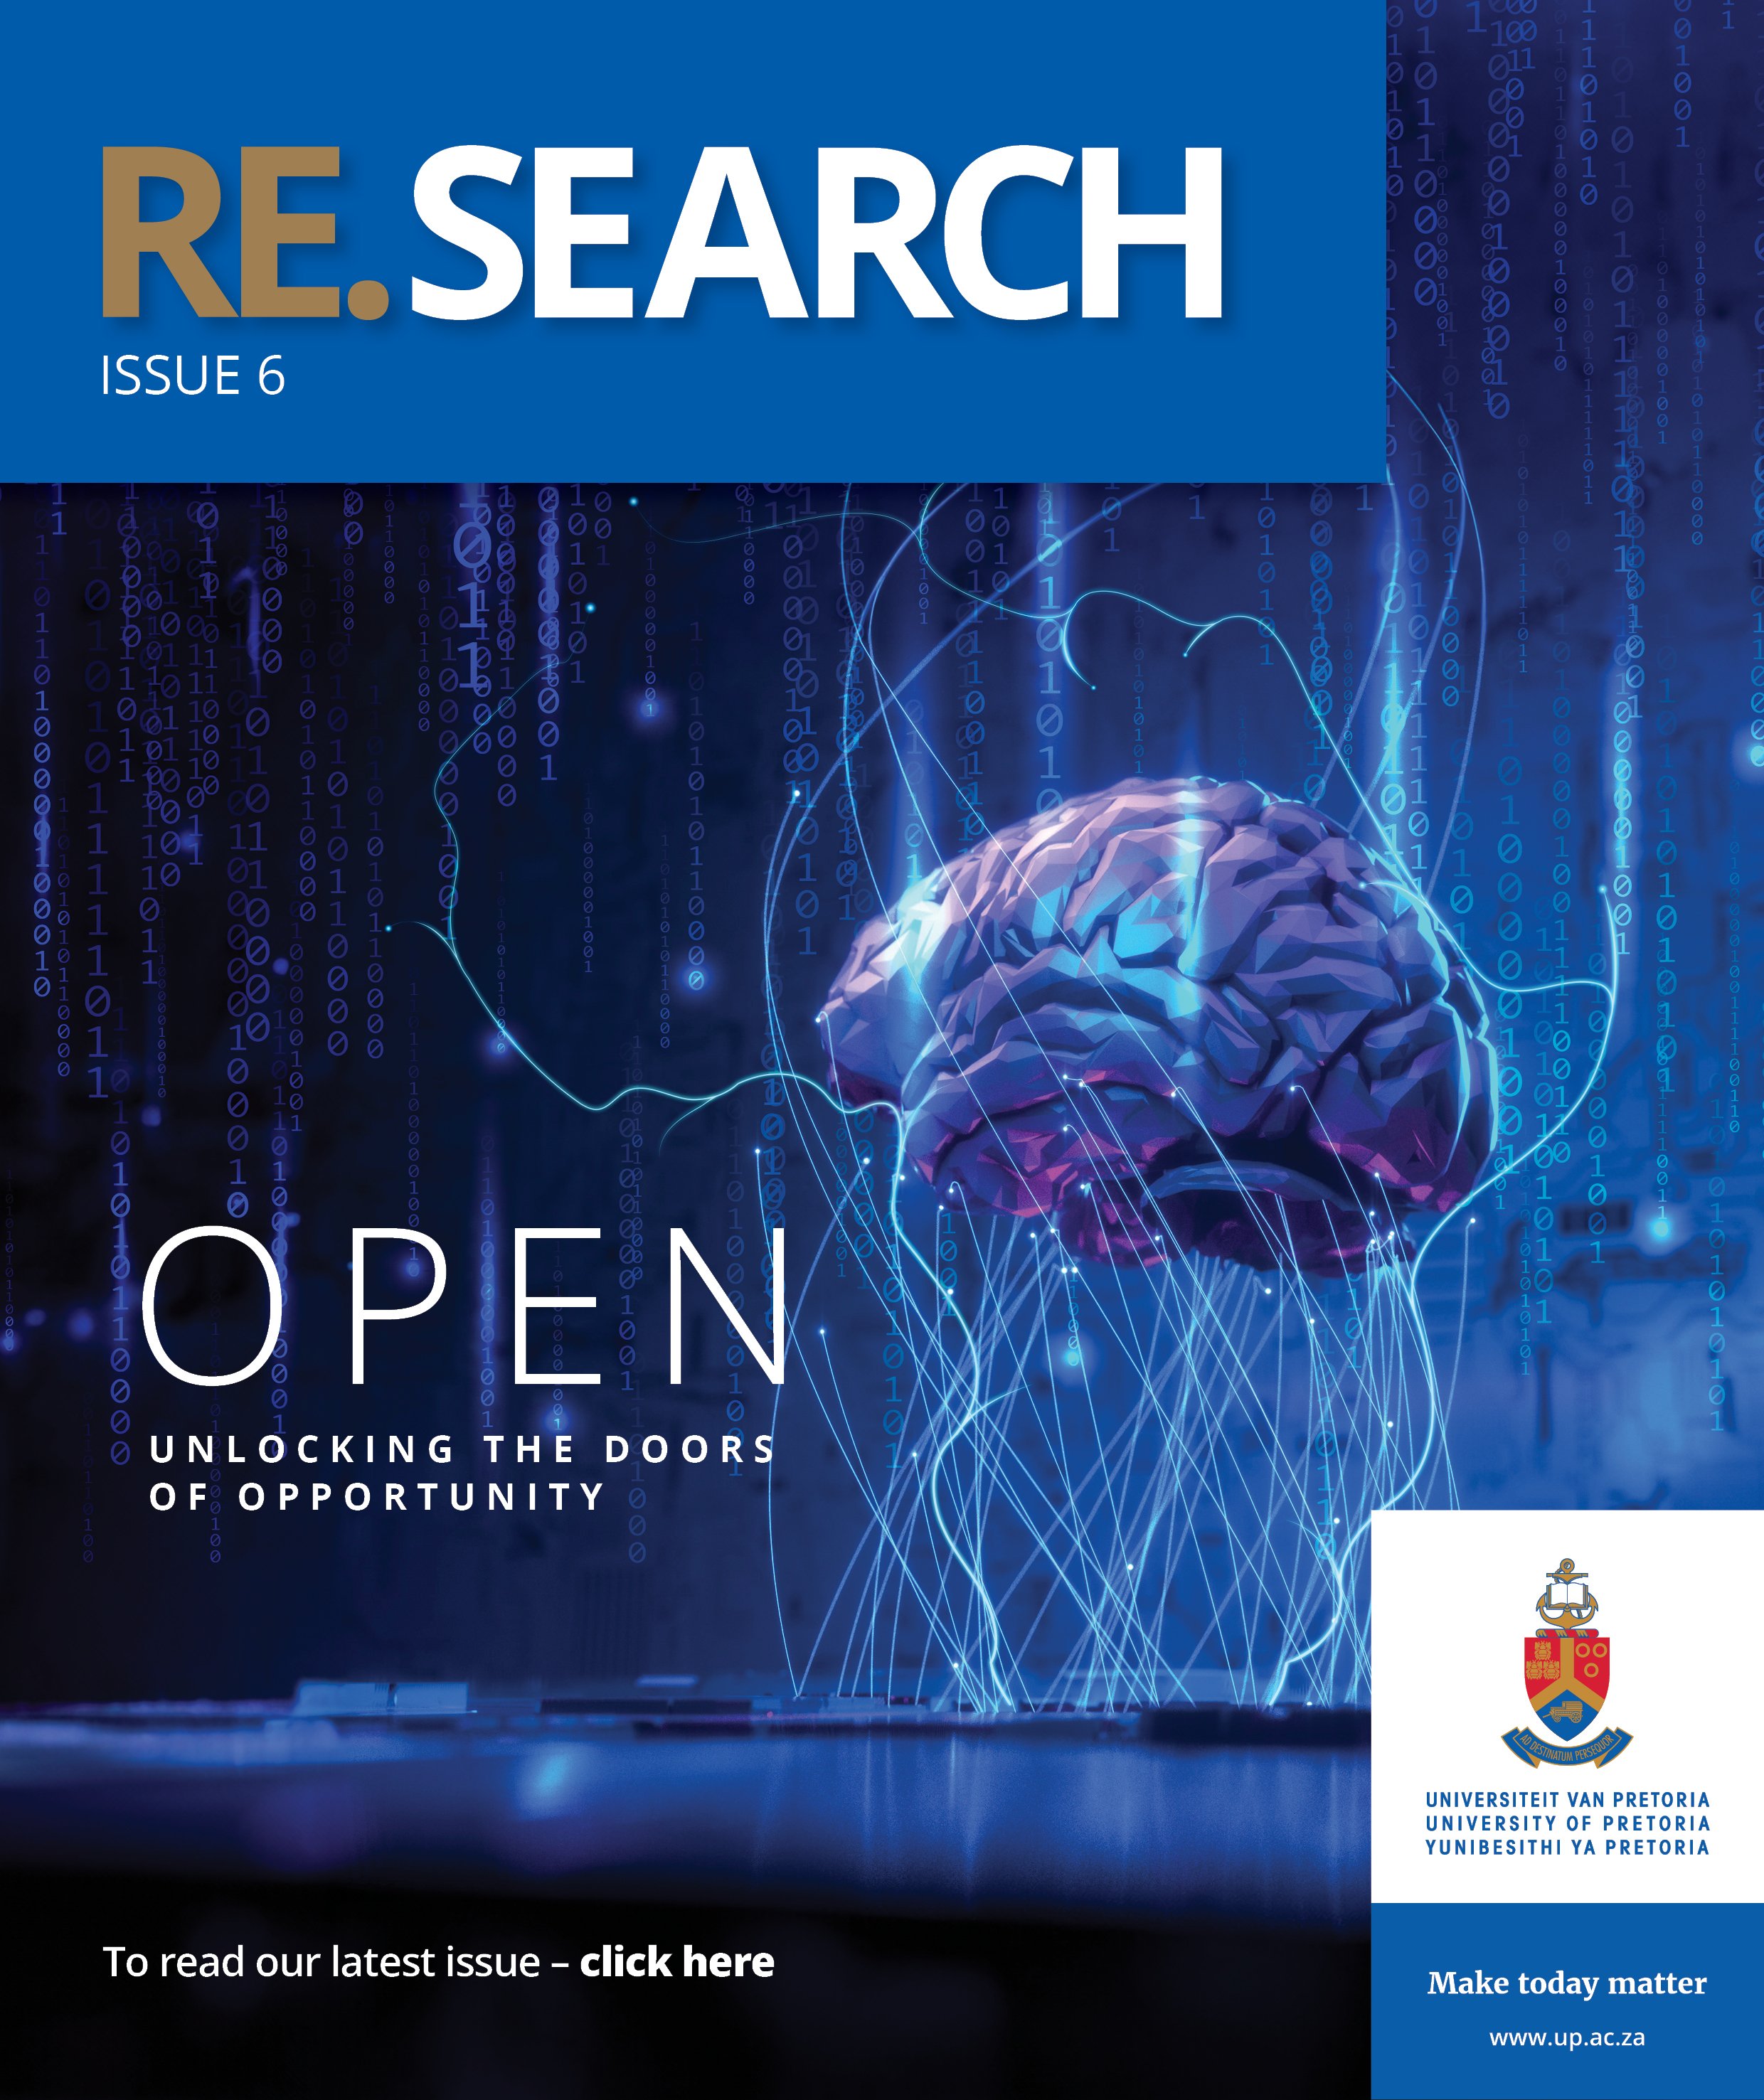 RE.SEARCH 6 magazine - Open